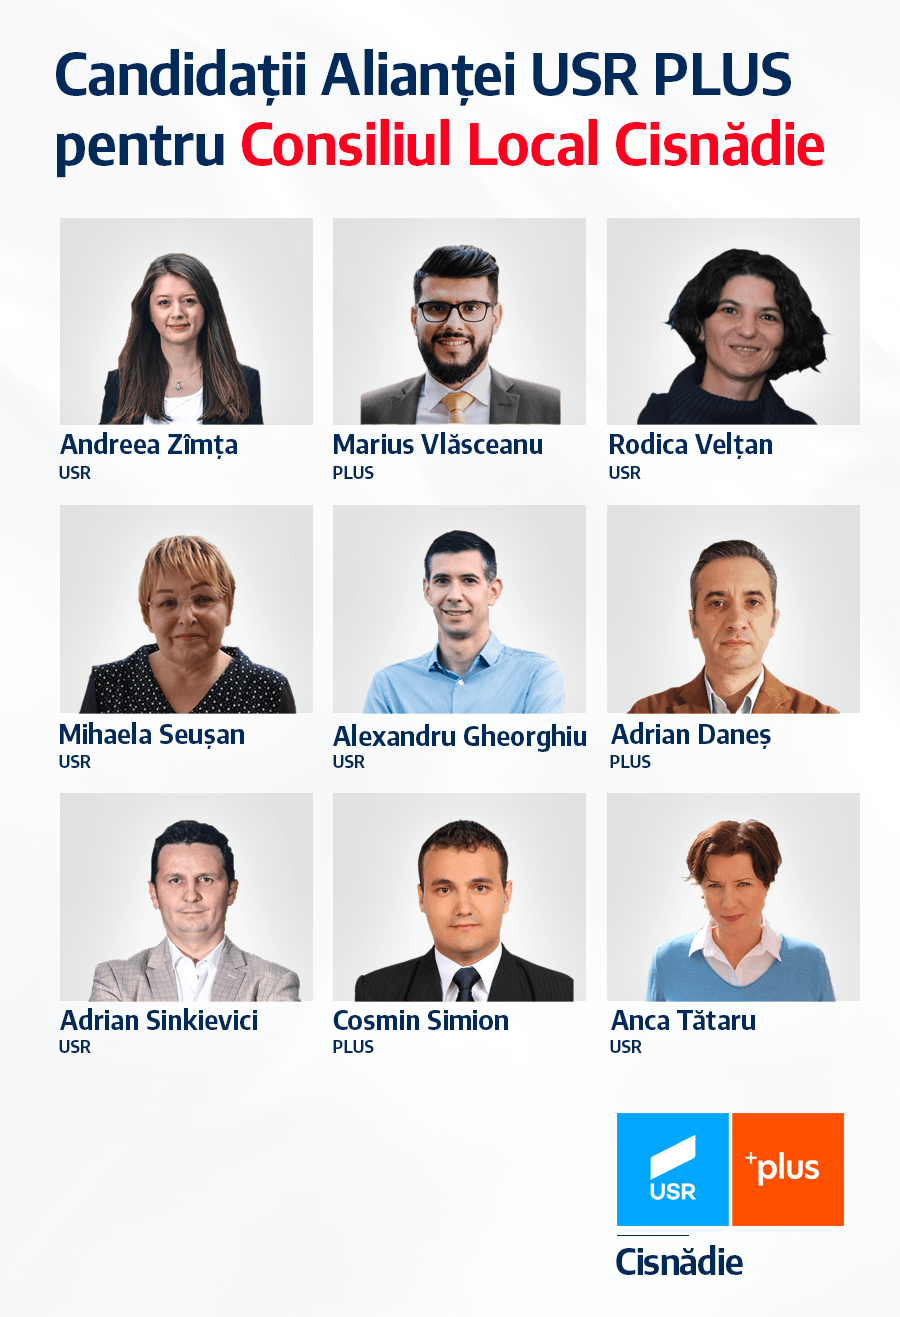 Alianța USR PLUS Candidați Consiliul Local Cisnădie